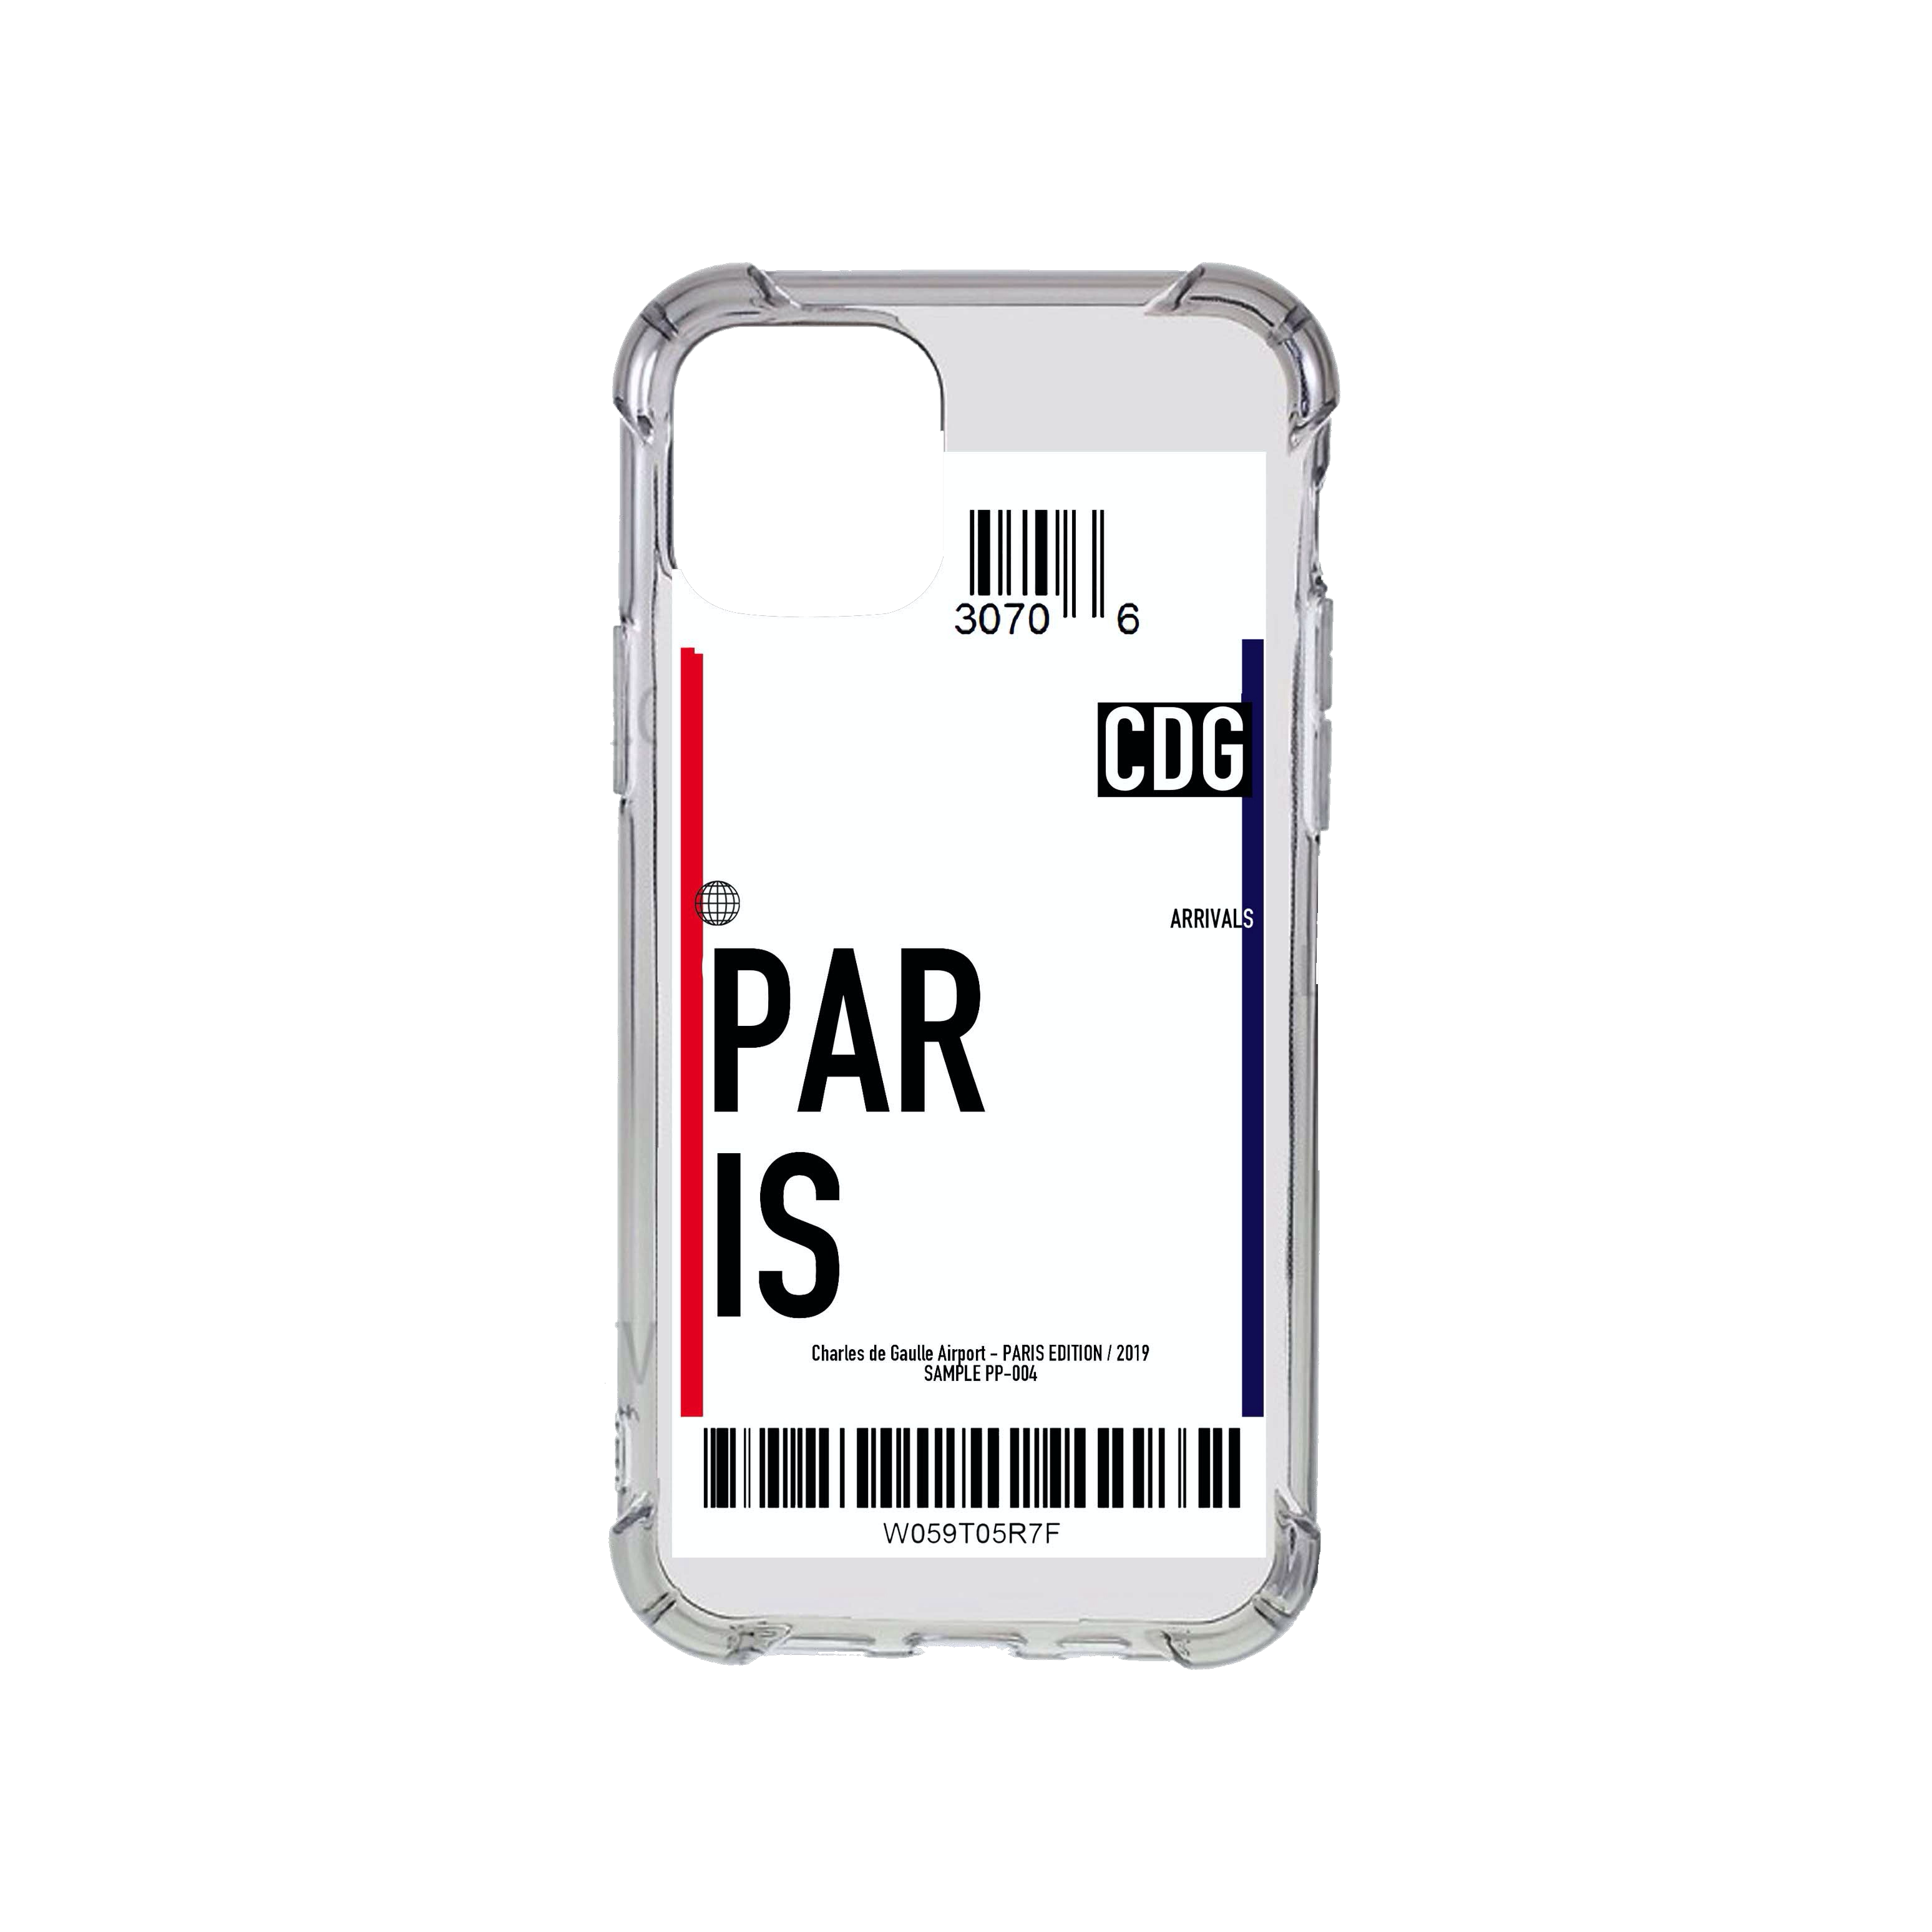 Paris Flight Ticket